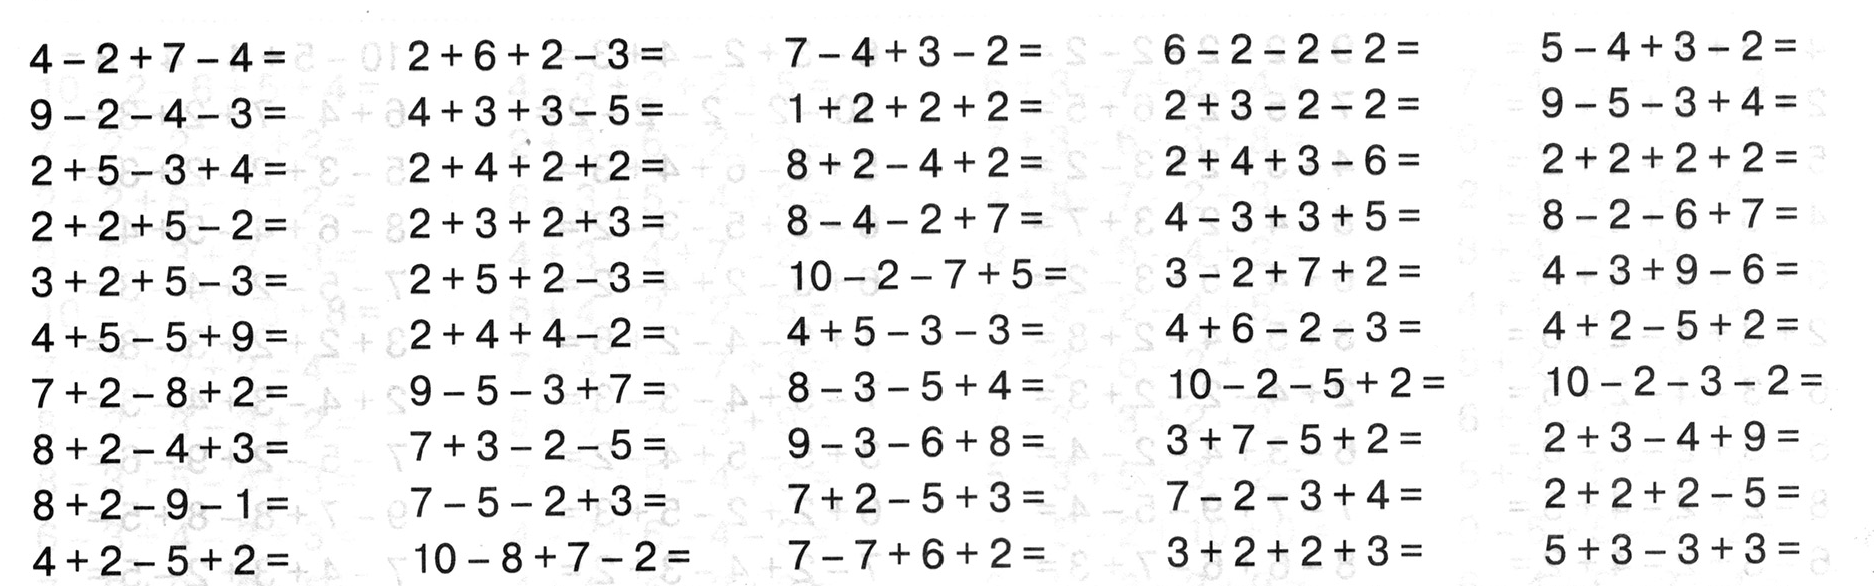 Математика примеры до 20 1 класс распечатать. Примеры в пределах 10 на сложение и вычитание 1 класс. Примеры по математике 1 класс на сложение и вычитание в пределах 10. Счет в пределах 10 вычитание. Примеры для 1 класса по математике в пределах 10.